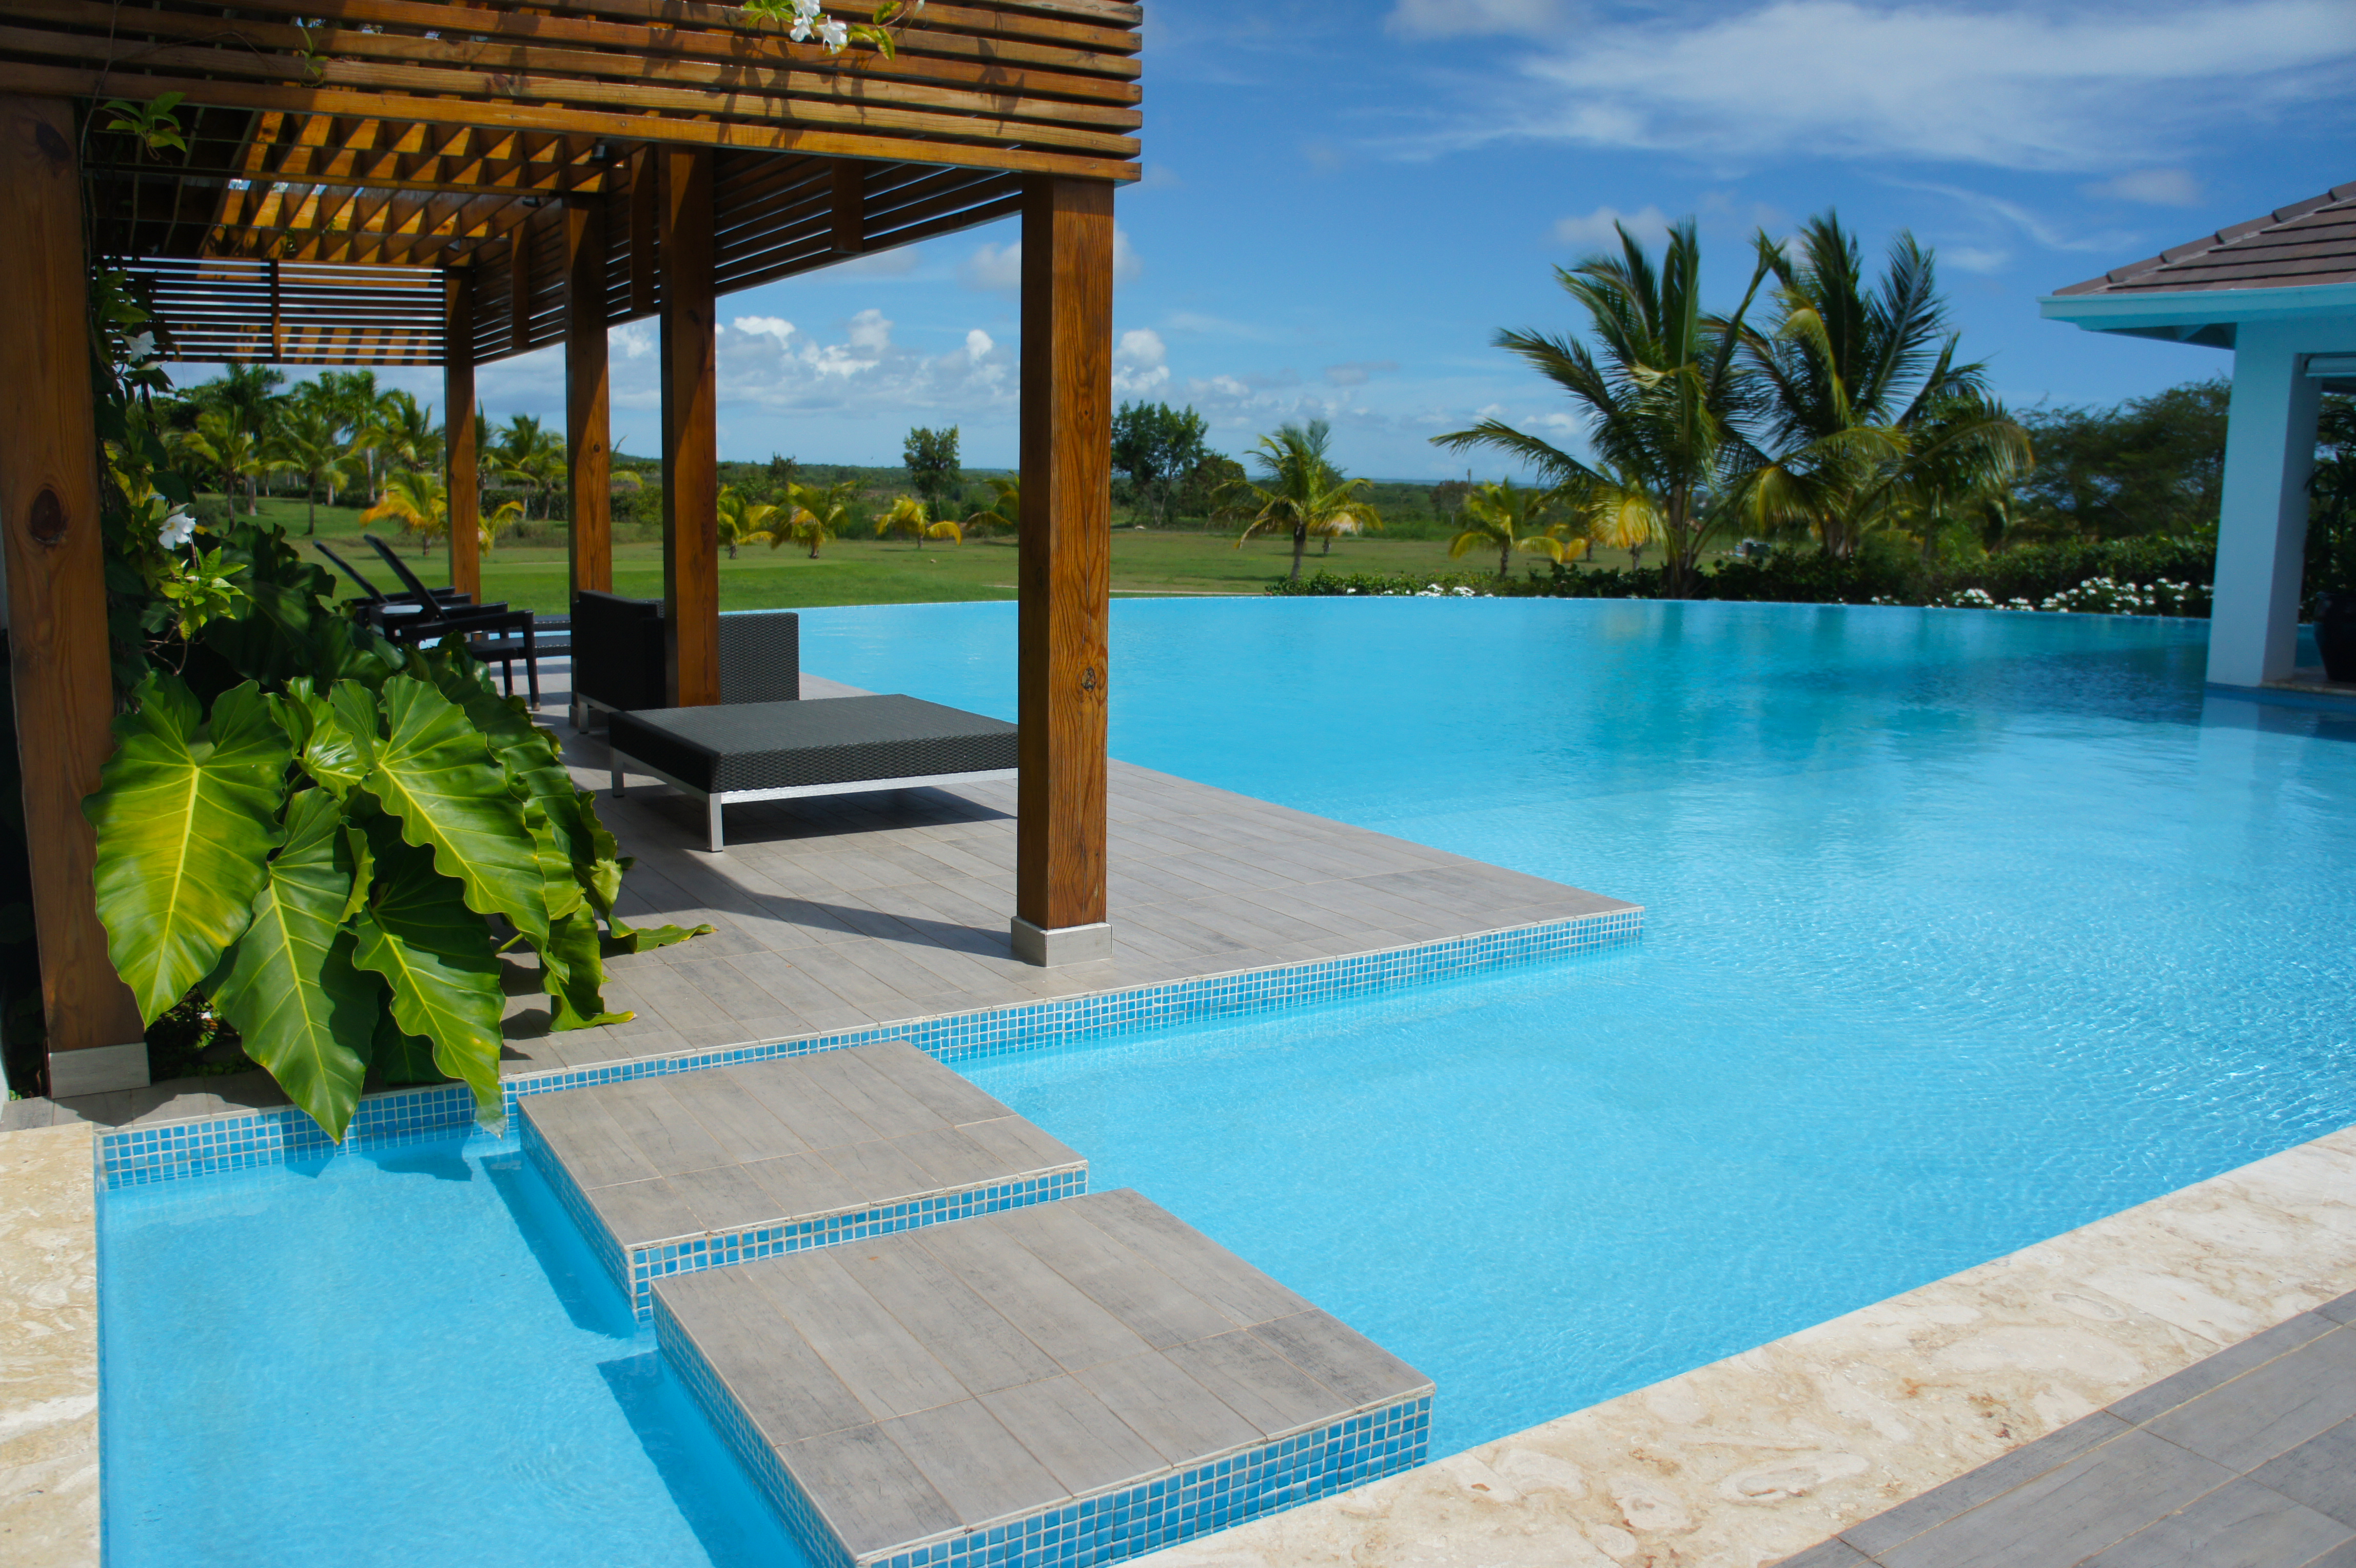 Casa de Campo Luxury Resort | All Inclusive Dominican Republic | Celebrity Kardashian Vacation | Las Palmas